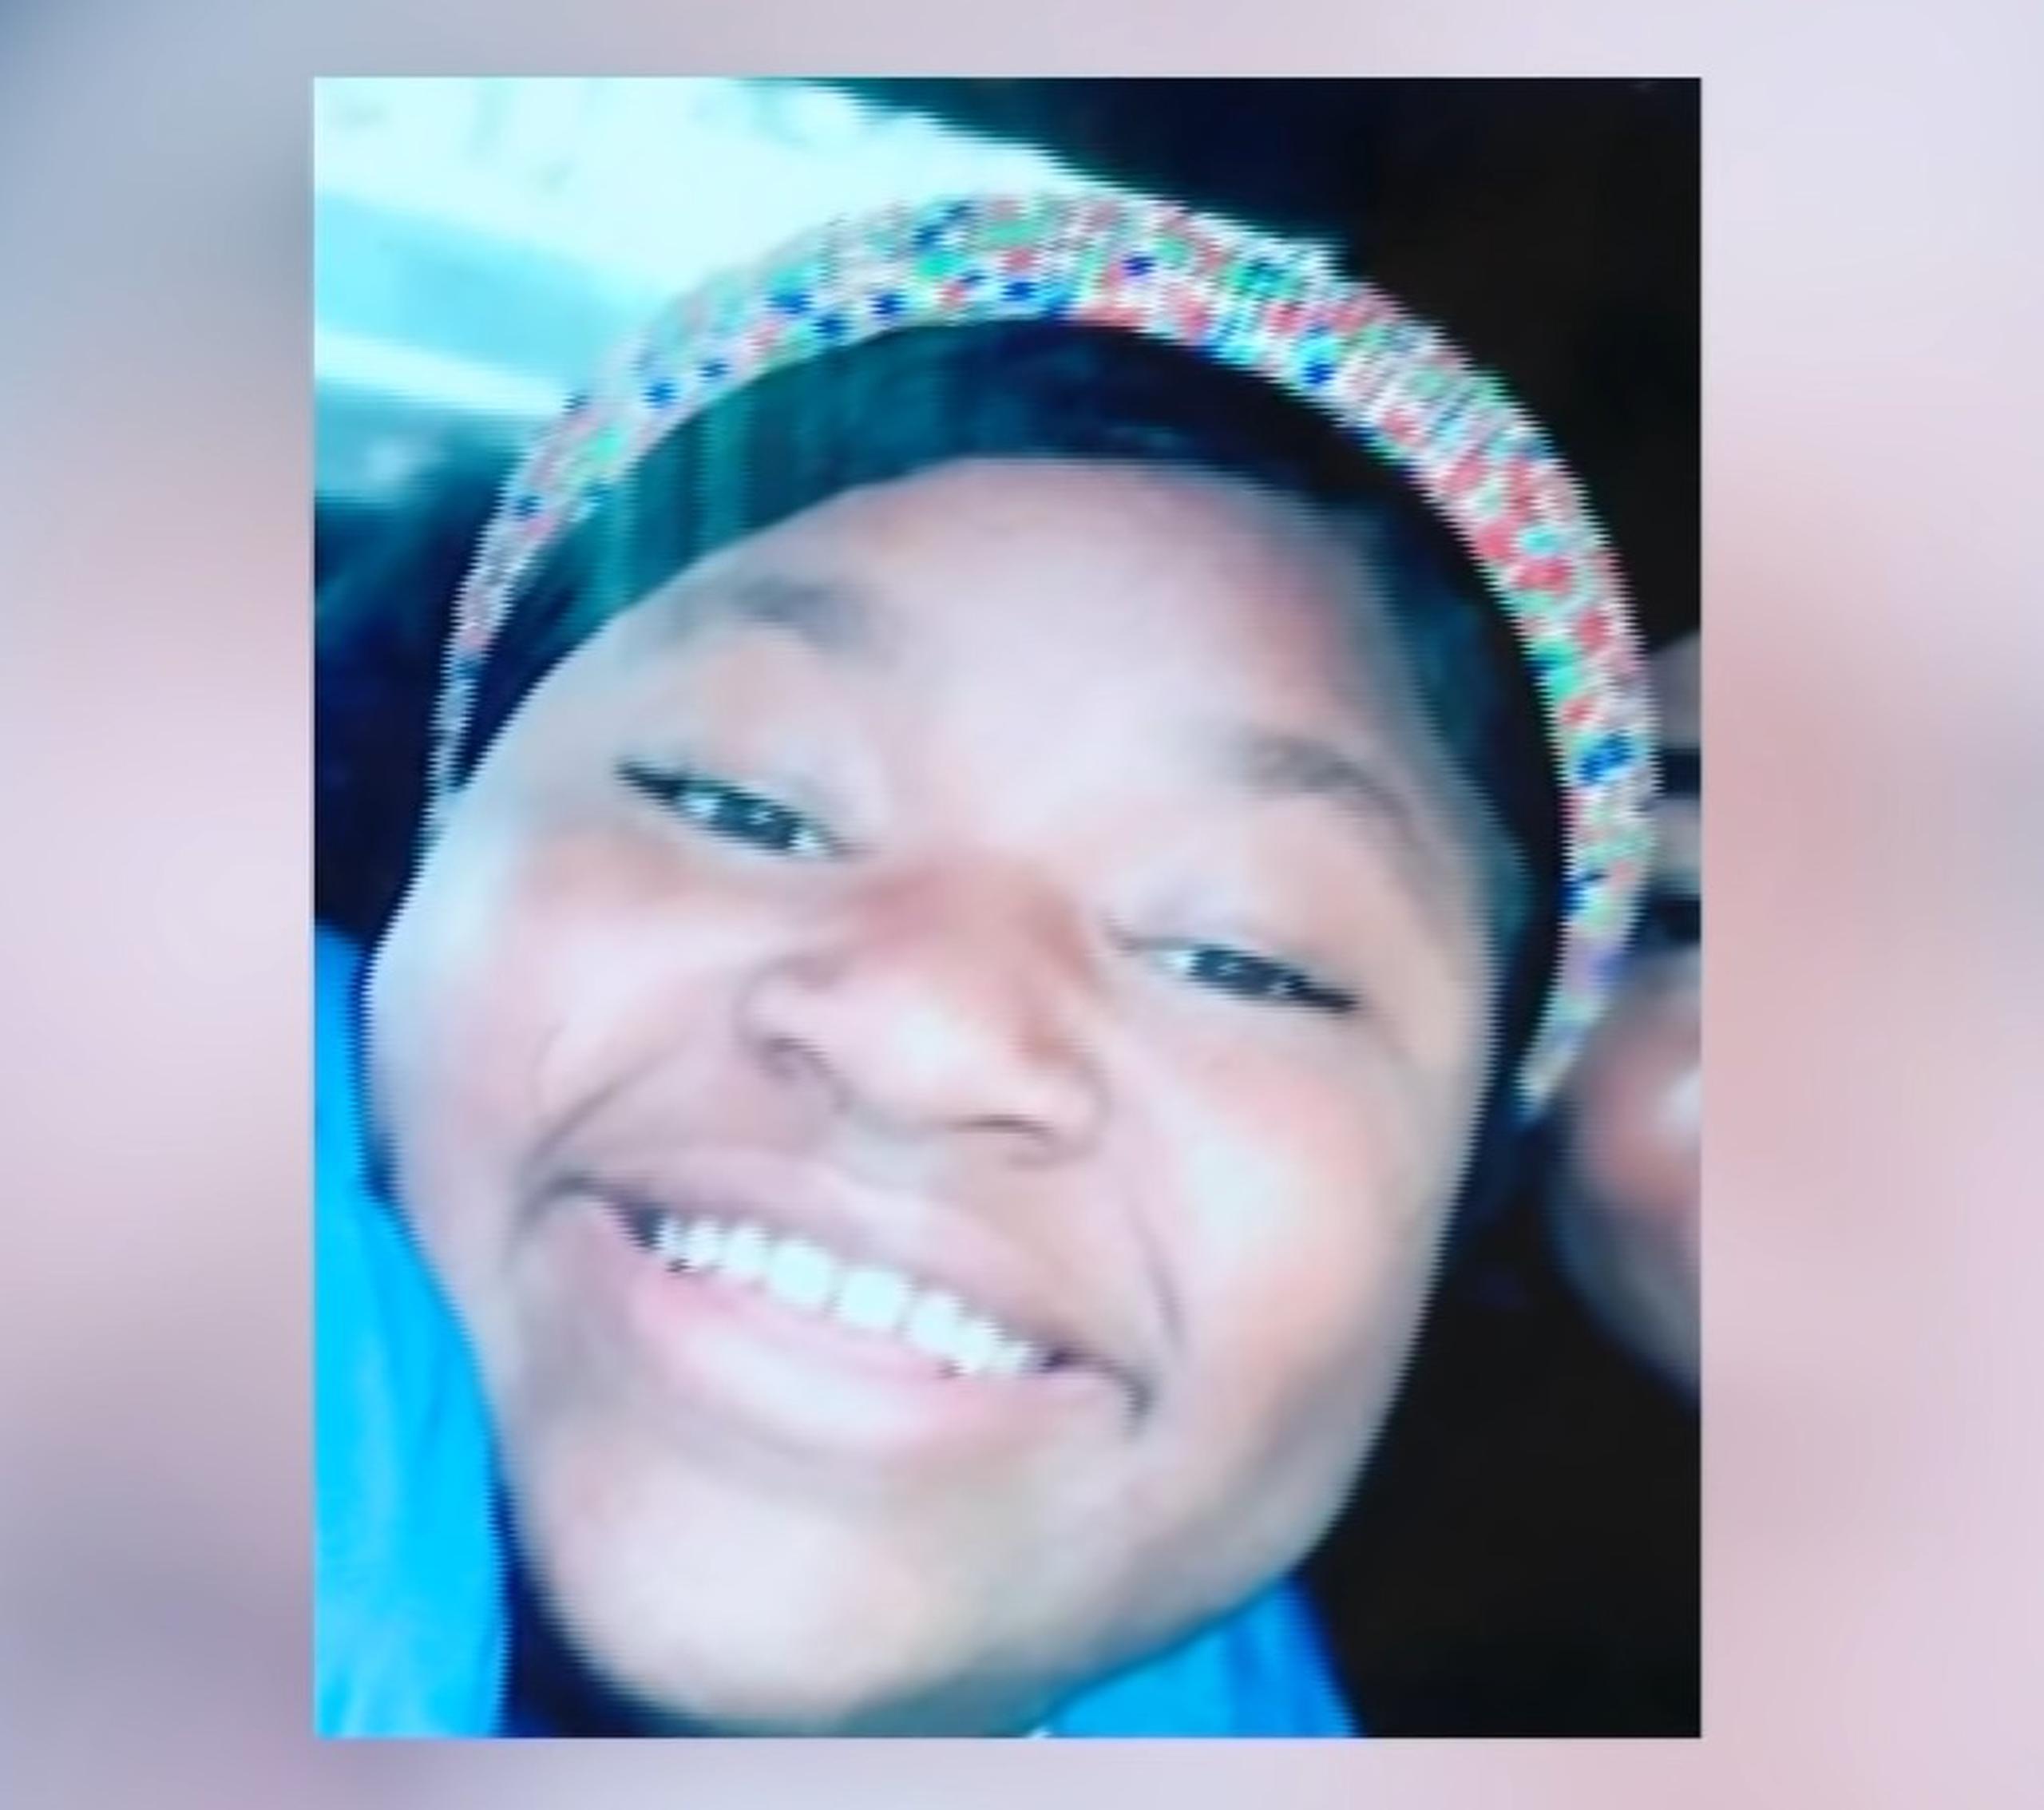 Imagen de Ma’Khia Bryant, la adolescente fallecida por disparos de un policía en Columbus, Ohio.